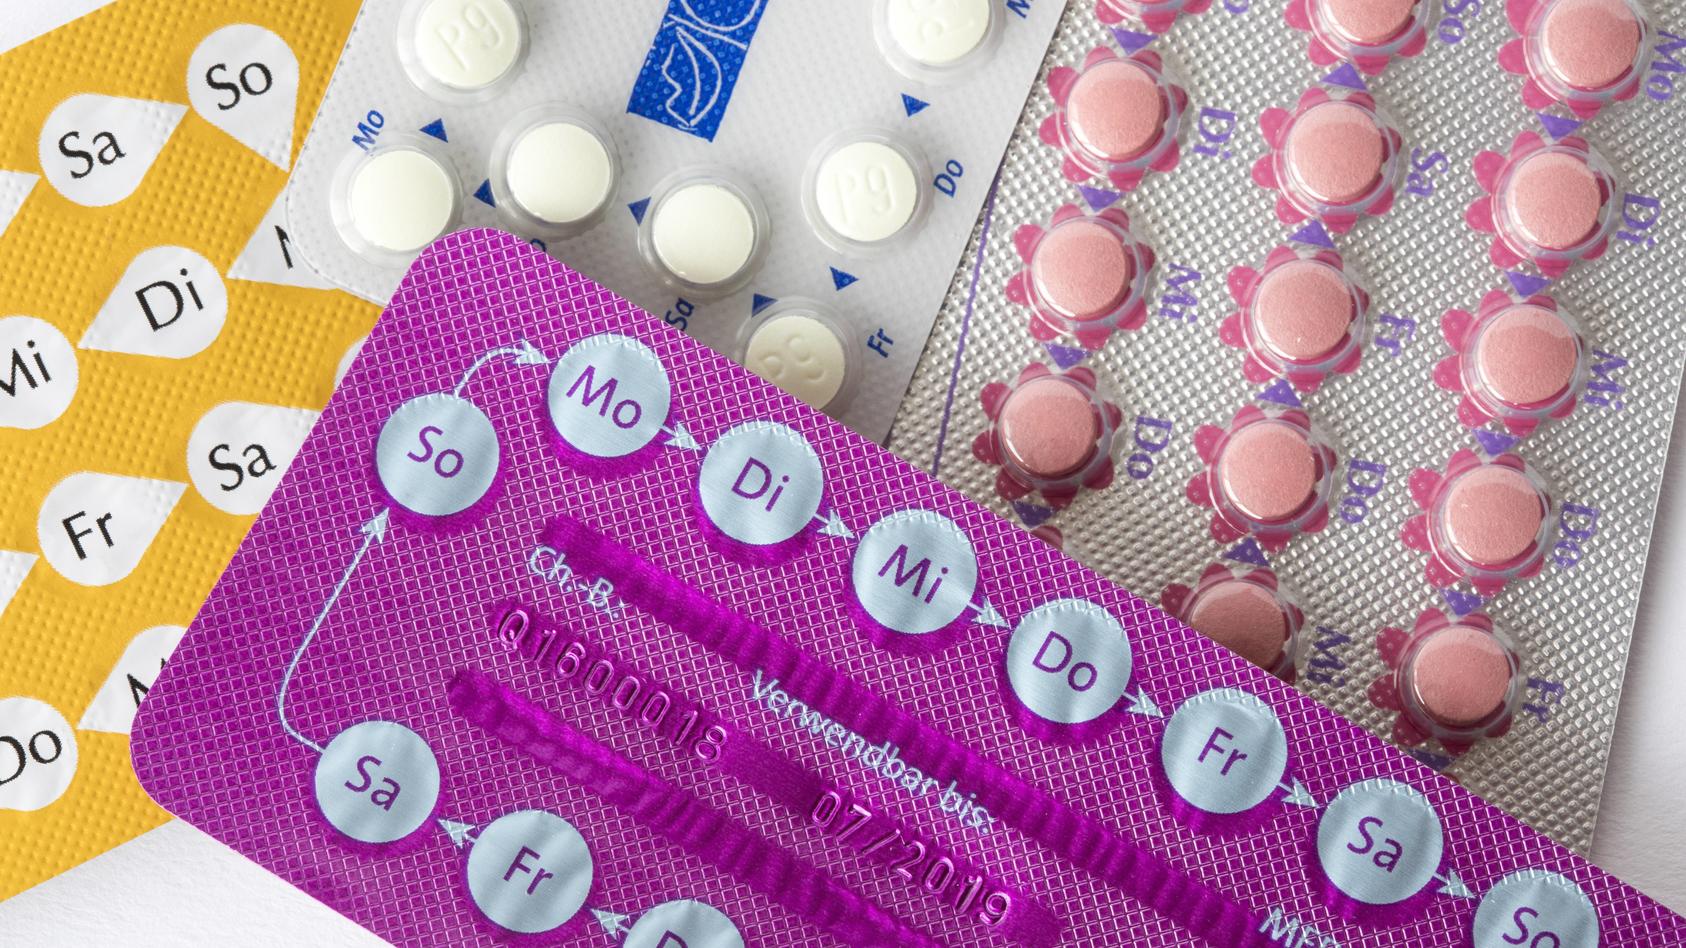 reine-gestagen-pillen-sollen-ein-gleich-hohes-brustkrebsrisiko-aufweisen-wie-antibabypillen-mit-ostrogen-anteil